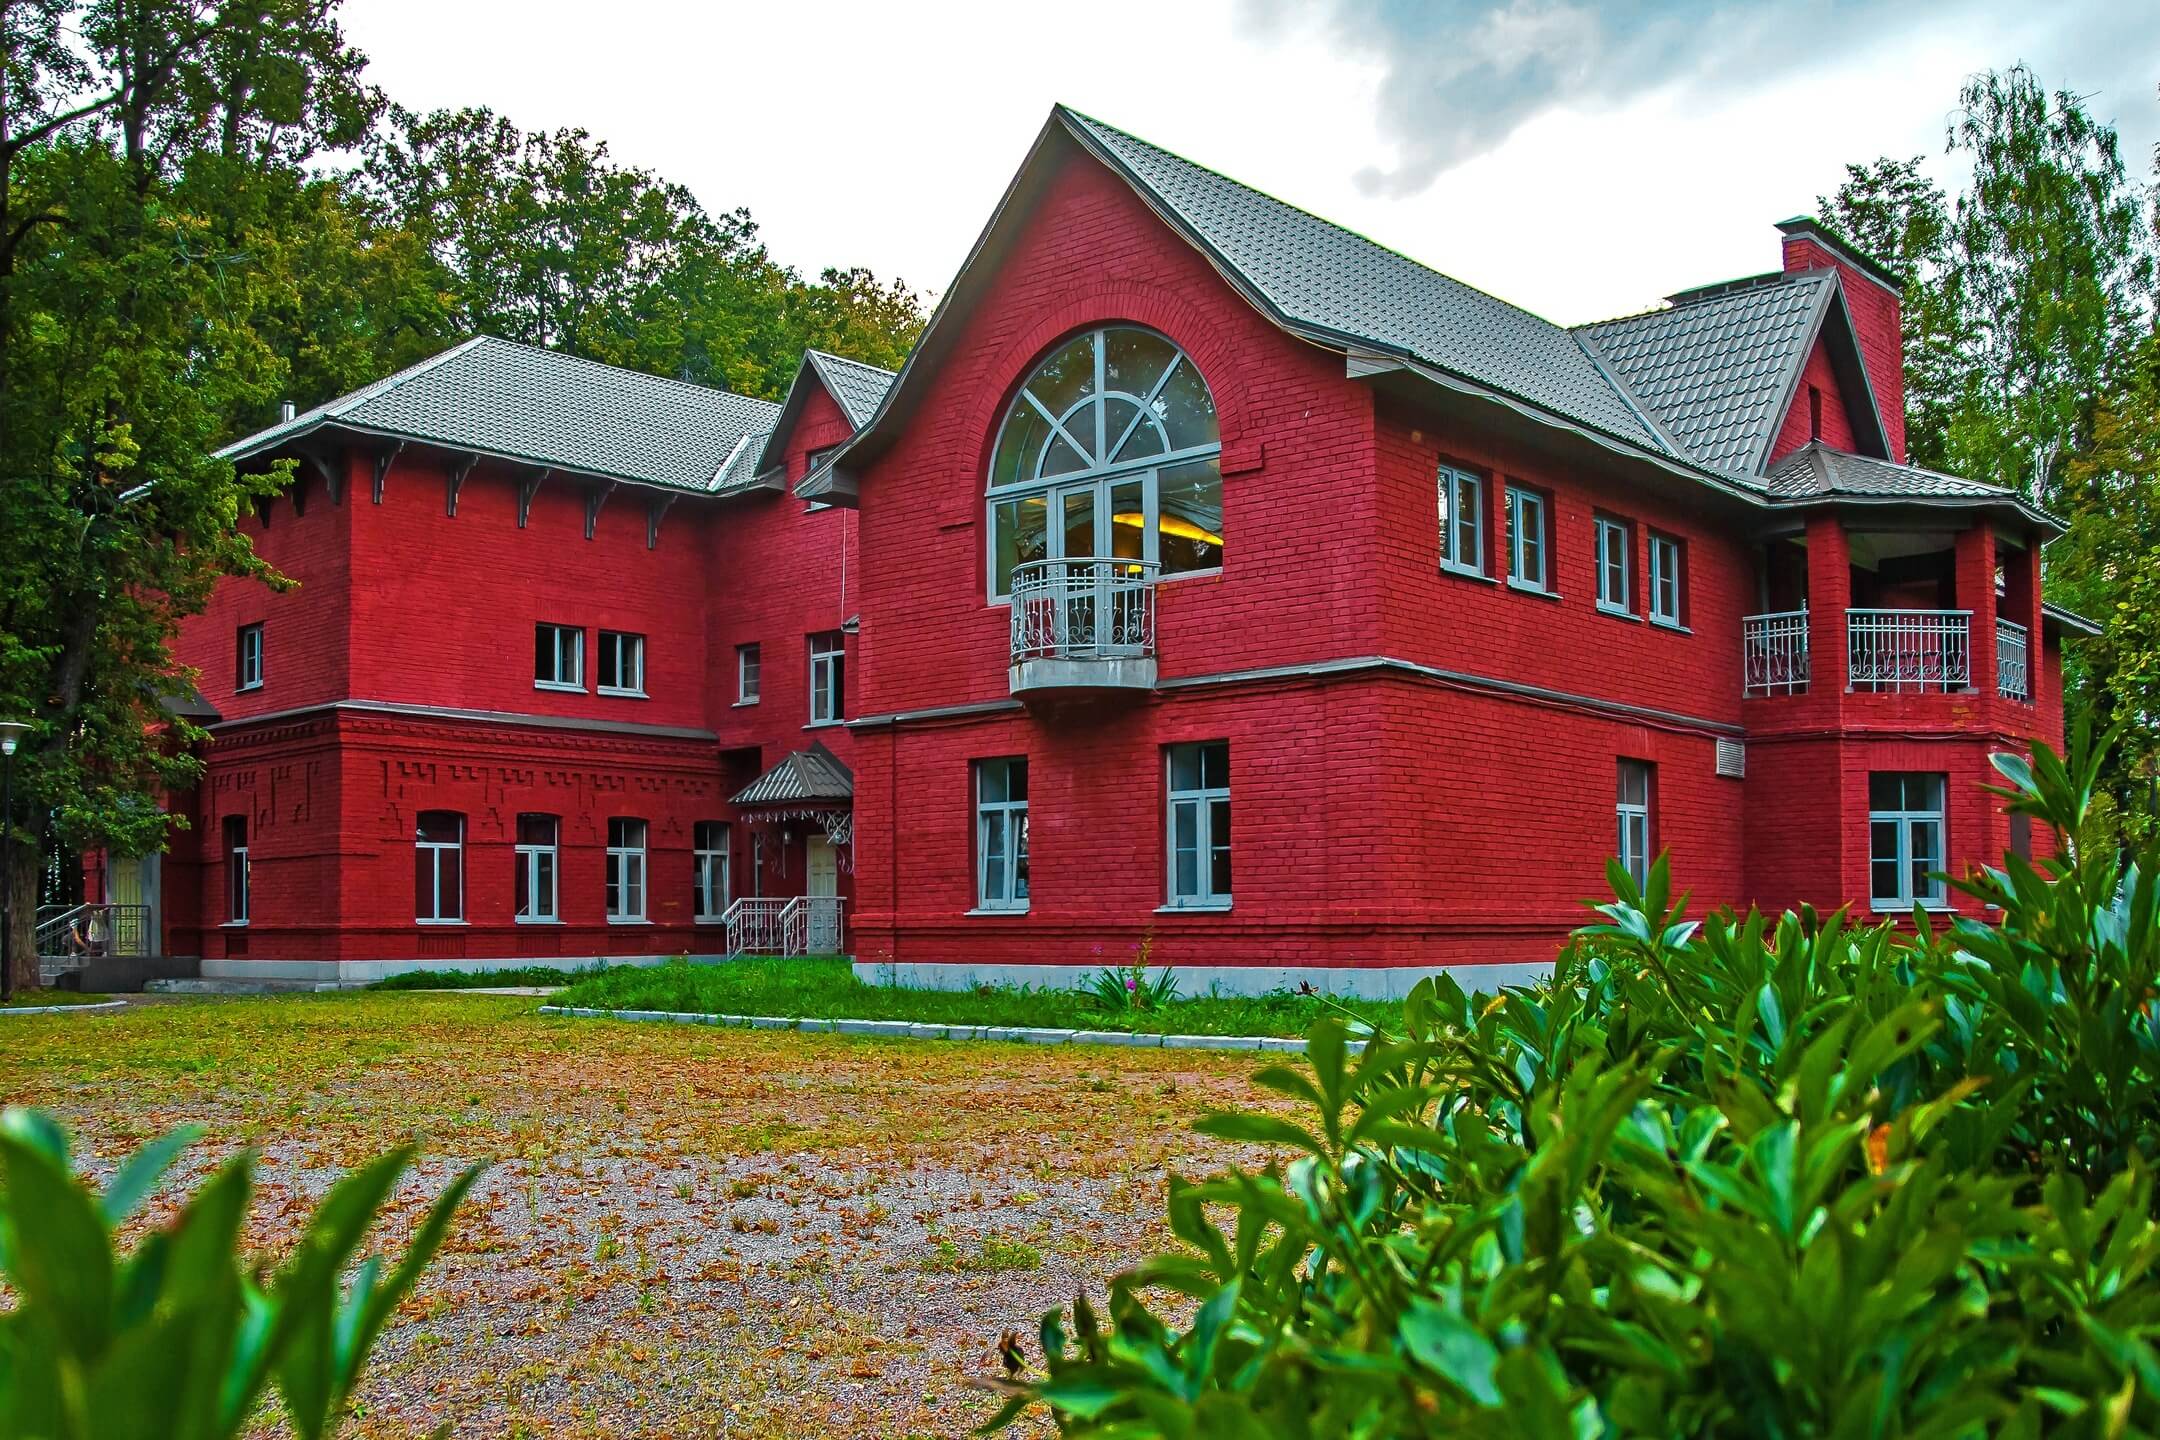 Фасад гостевого коттеджа выкрашен в насыщенный малиновый цвет.